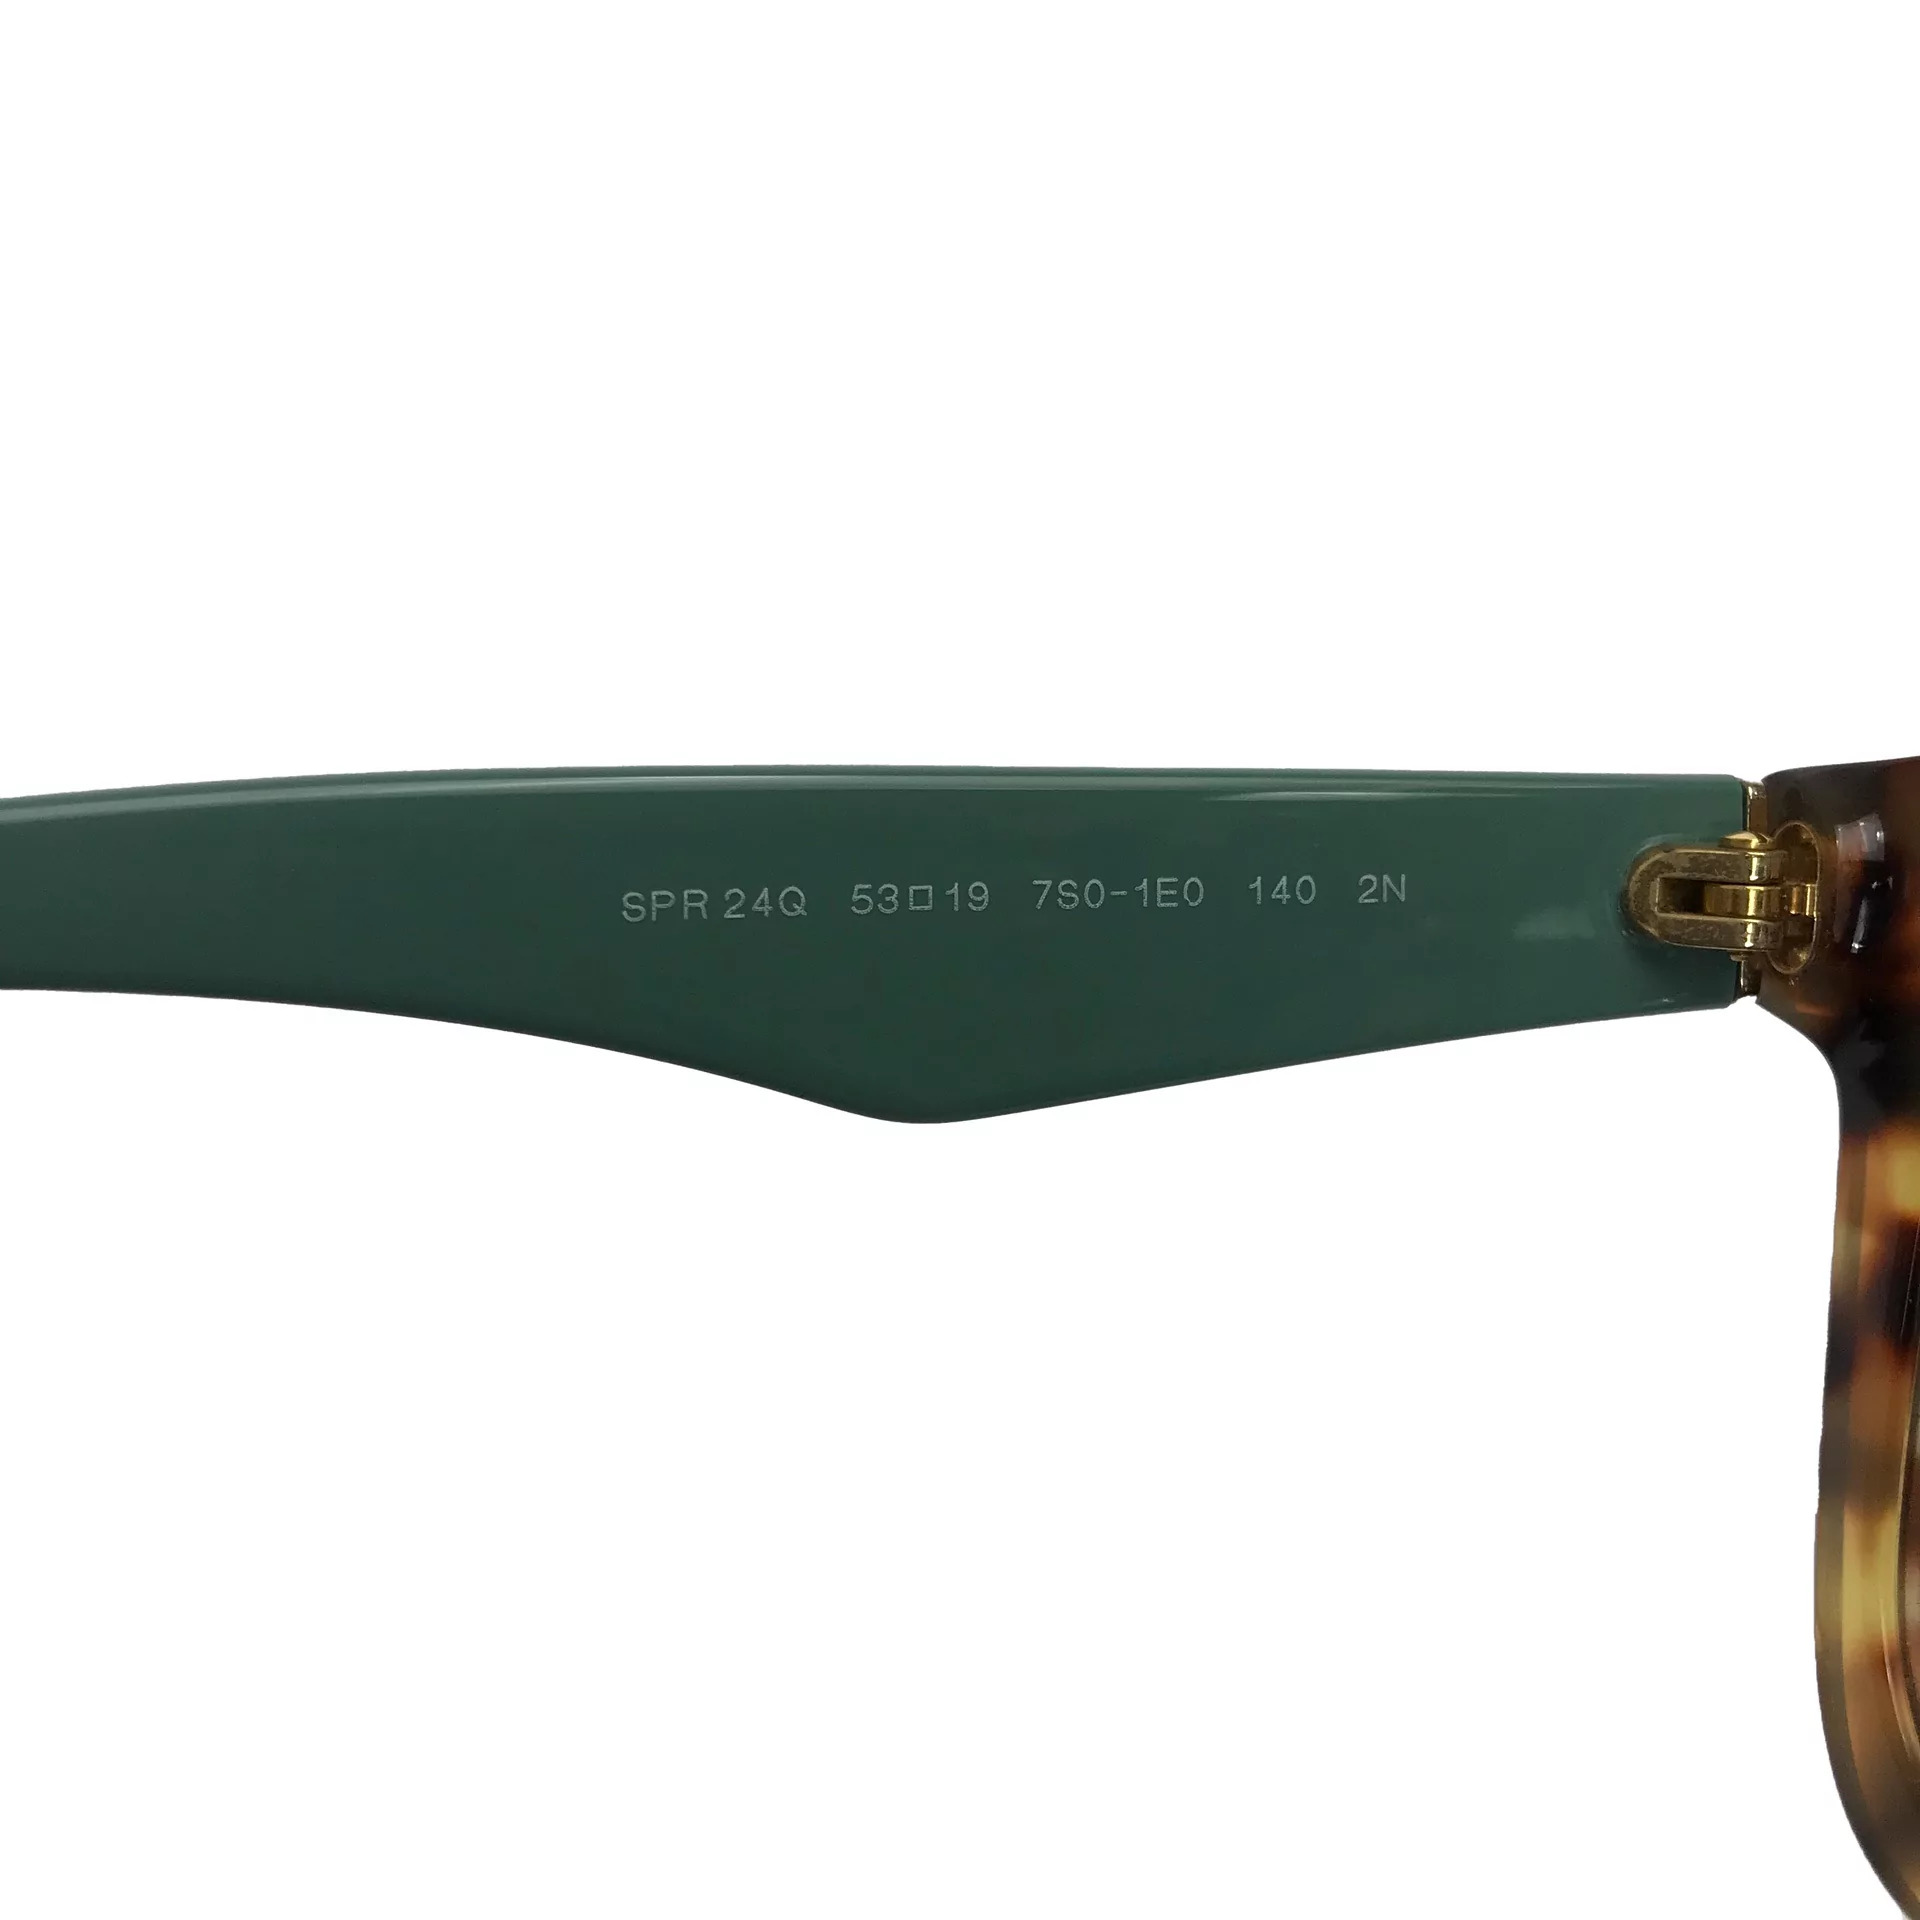 Óculos de Sol Prada - SPR24Q